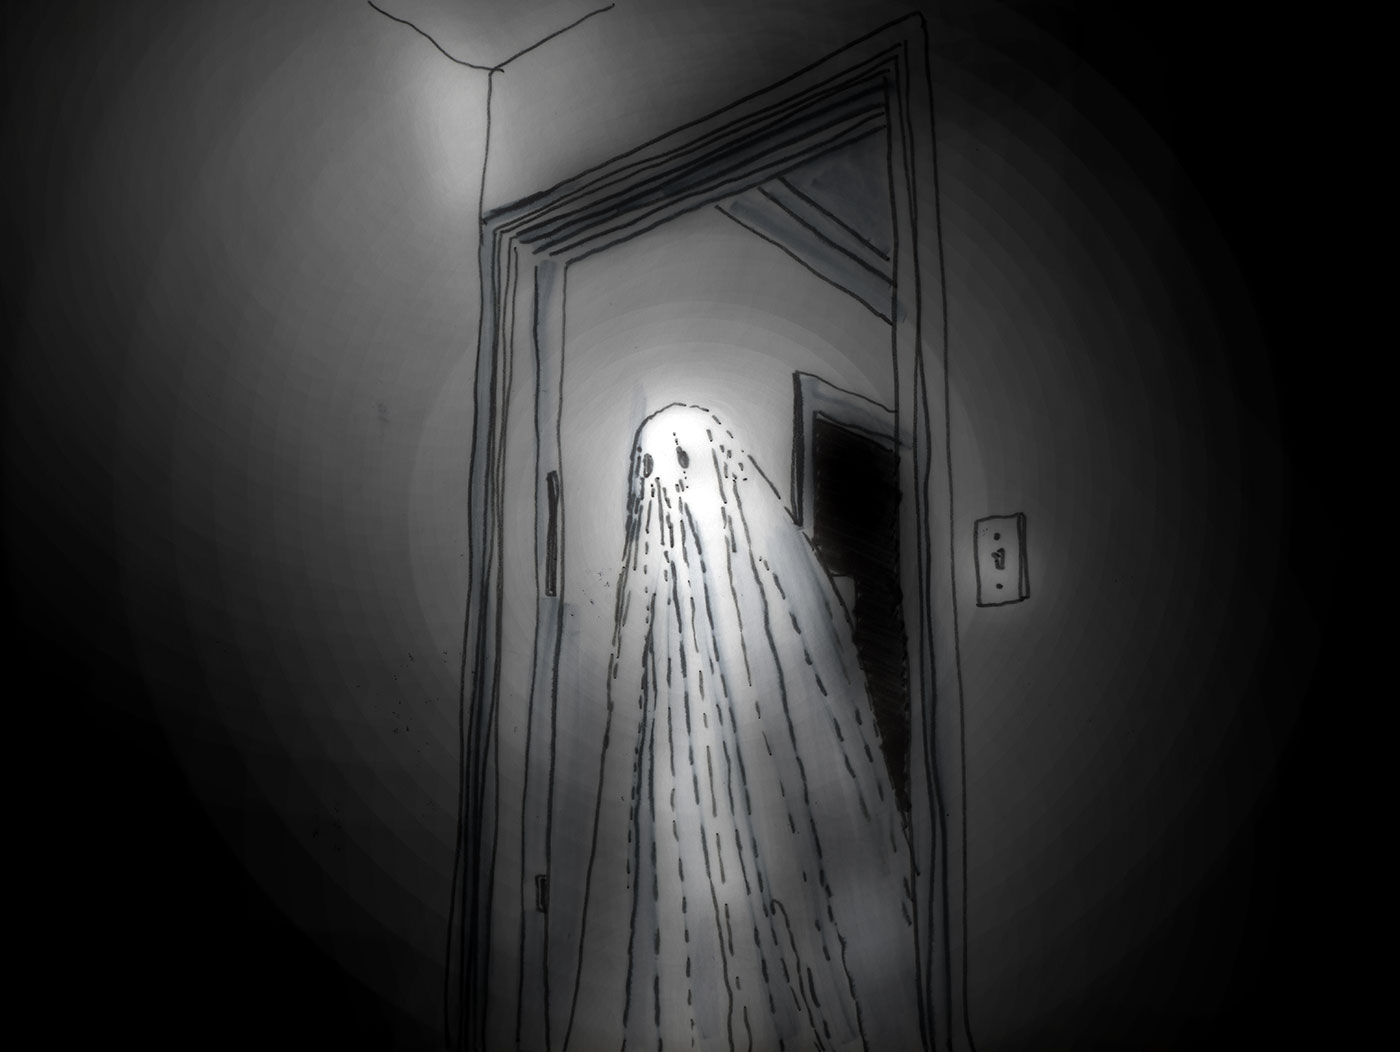 A ghost story, le fantôme comme malentendu de temps et de lieu